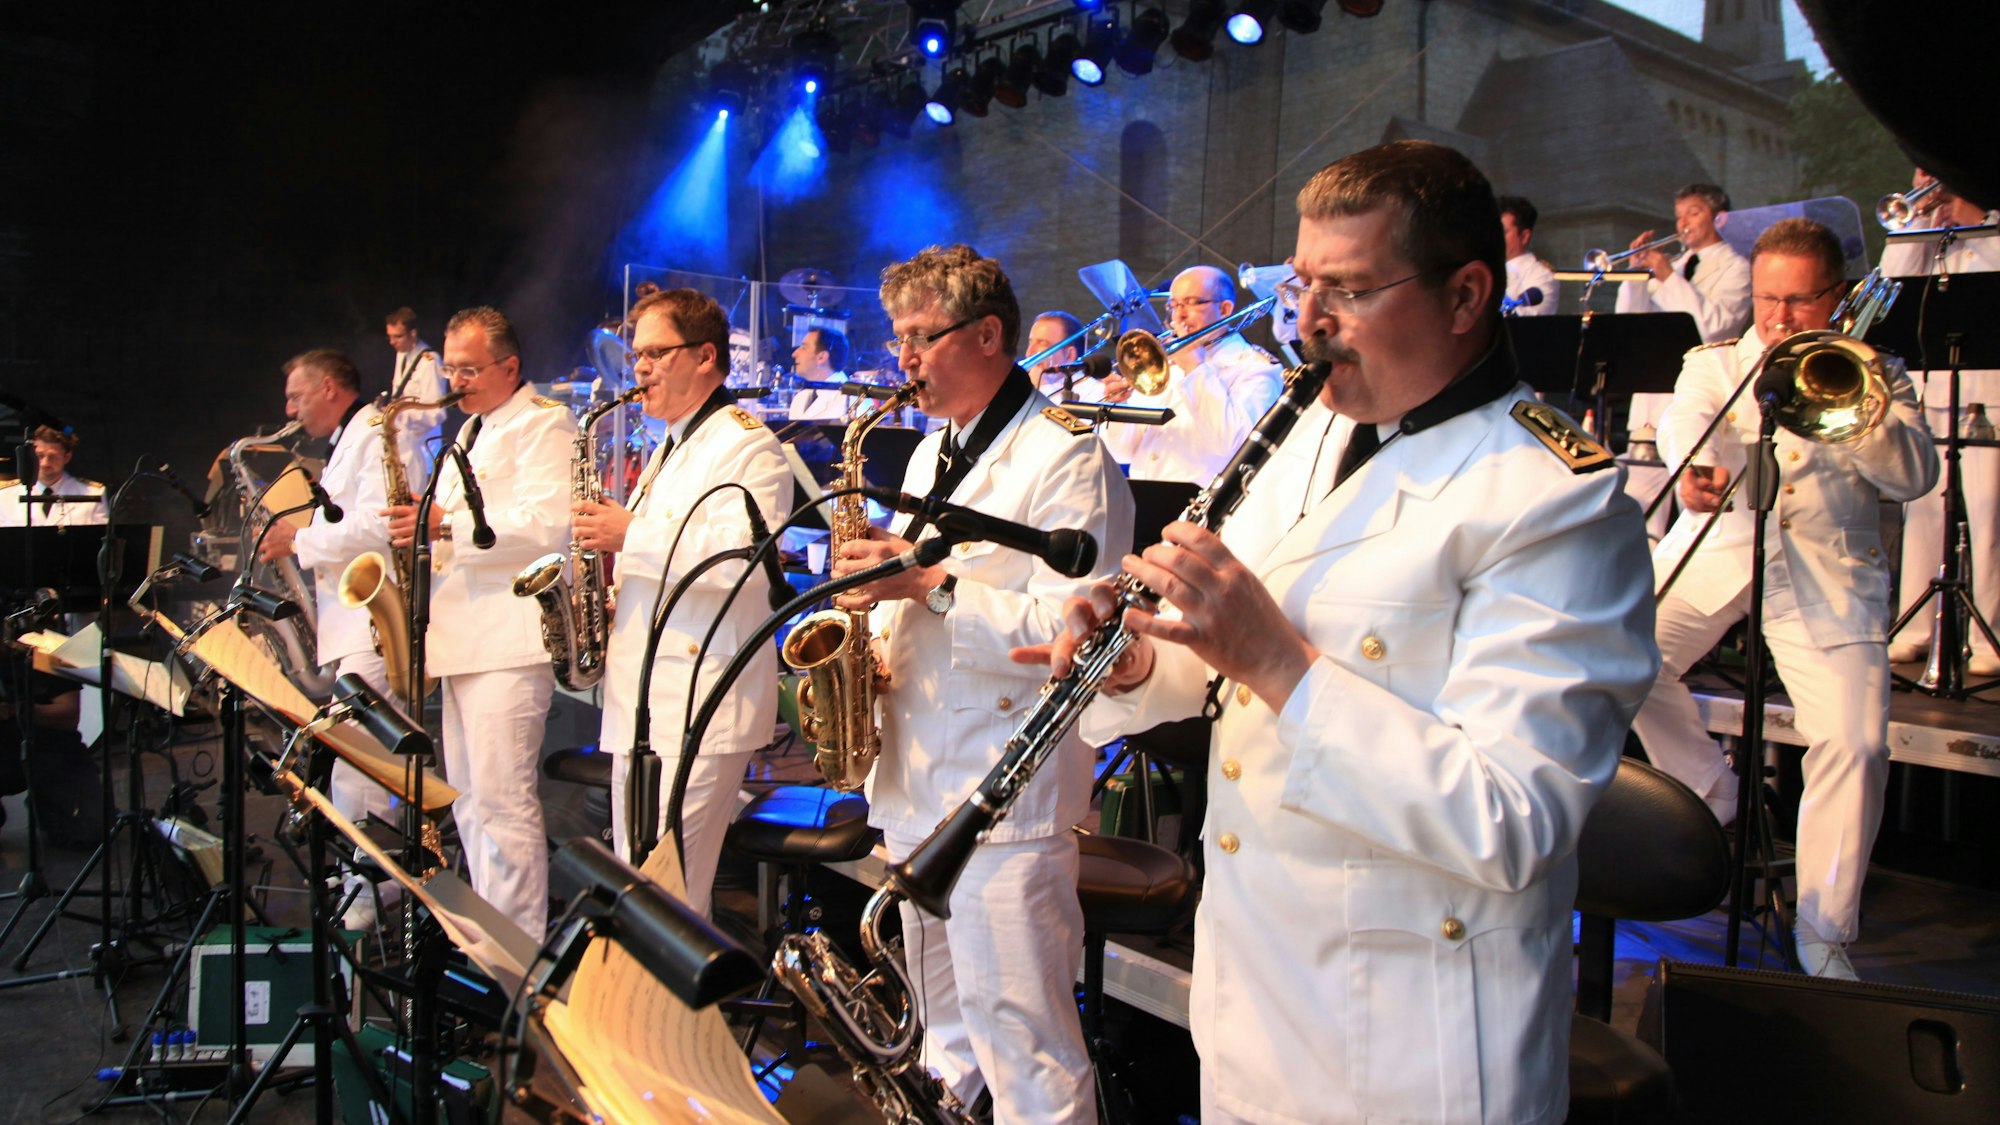 Musiker der Bundeswehr Big Band stehen auf einer Bühne in blauem Scheinwerferlicht, sie tragen weiße Uniformen. Sie spielen Saxophon, Trompete und Klarinette.